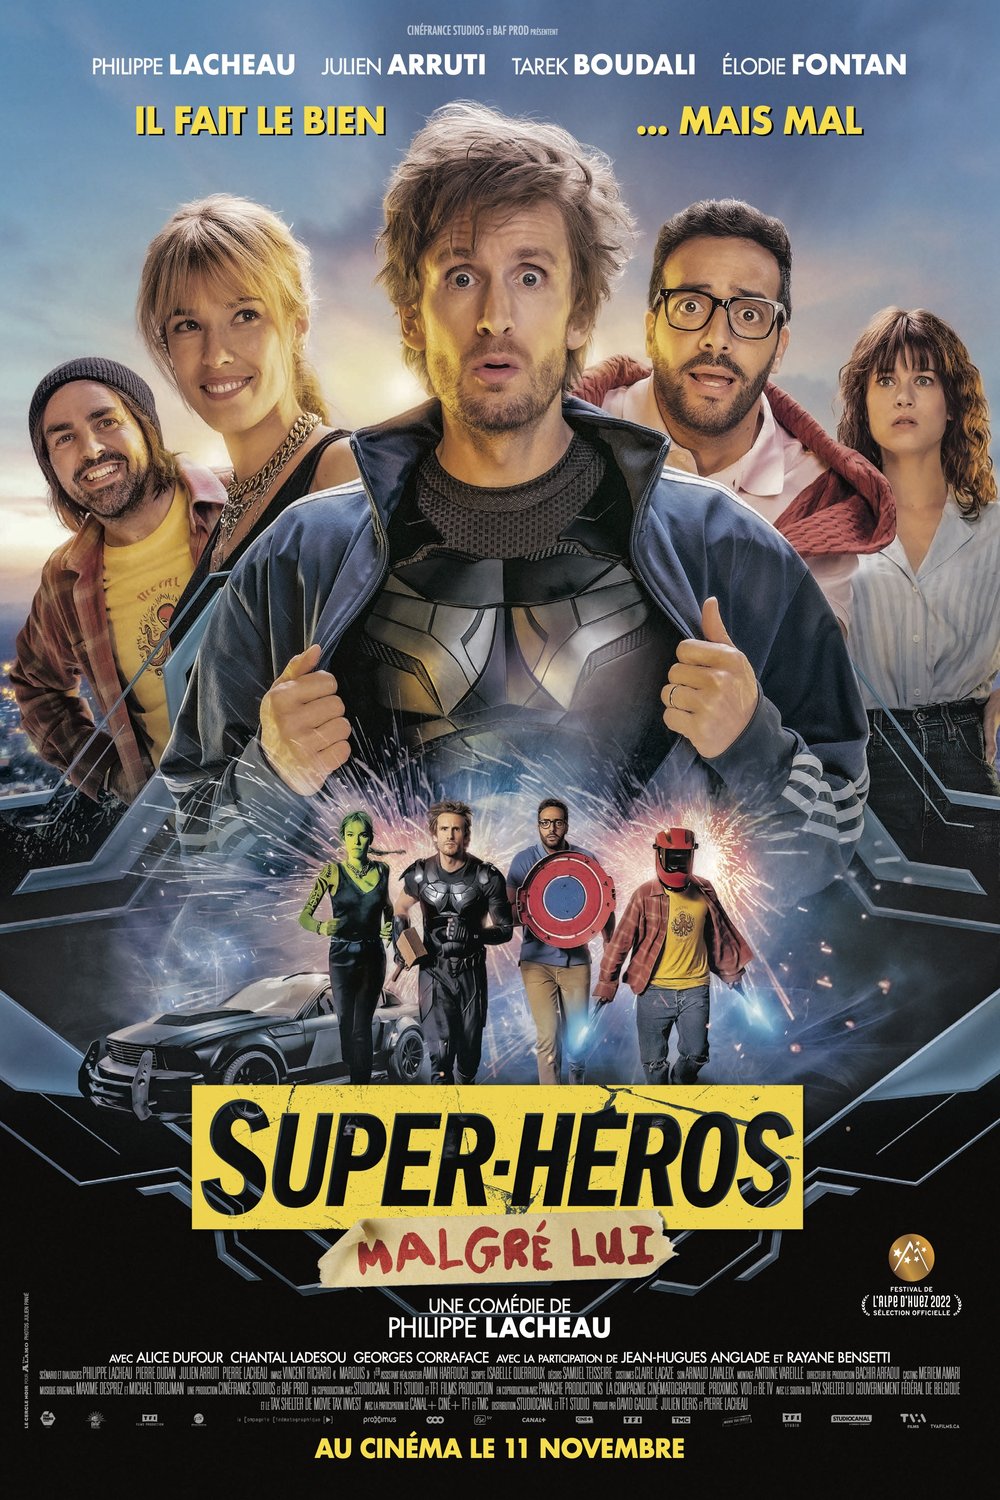 Poster of the movie Super-héros malgré lui